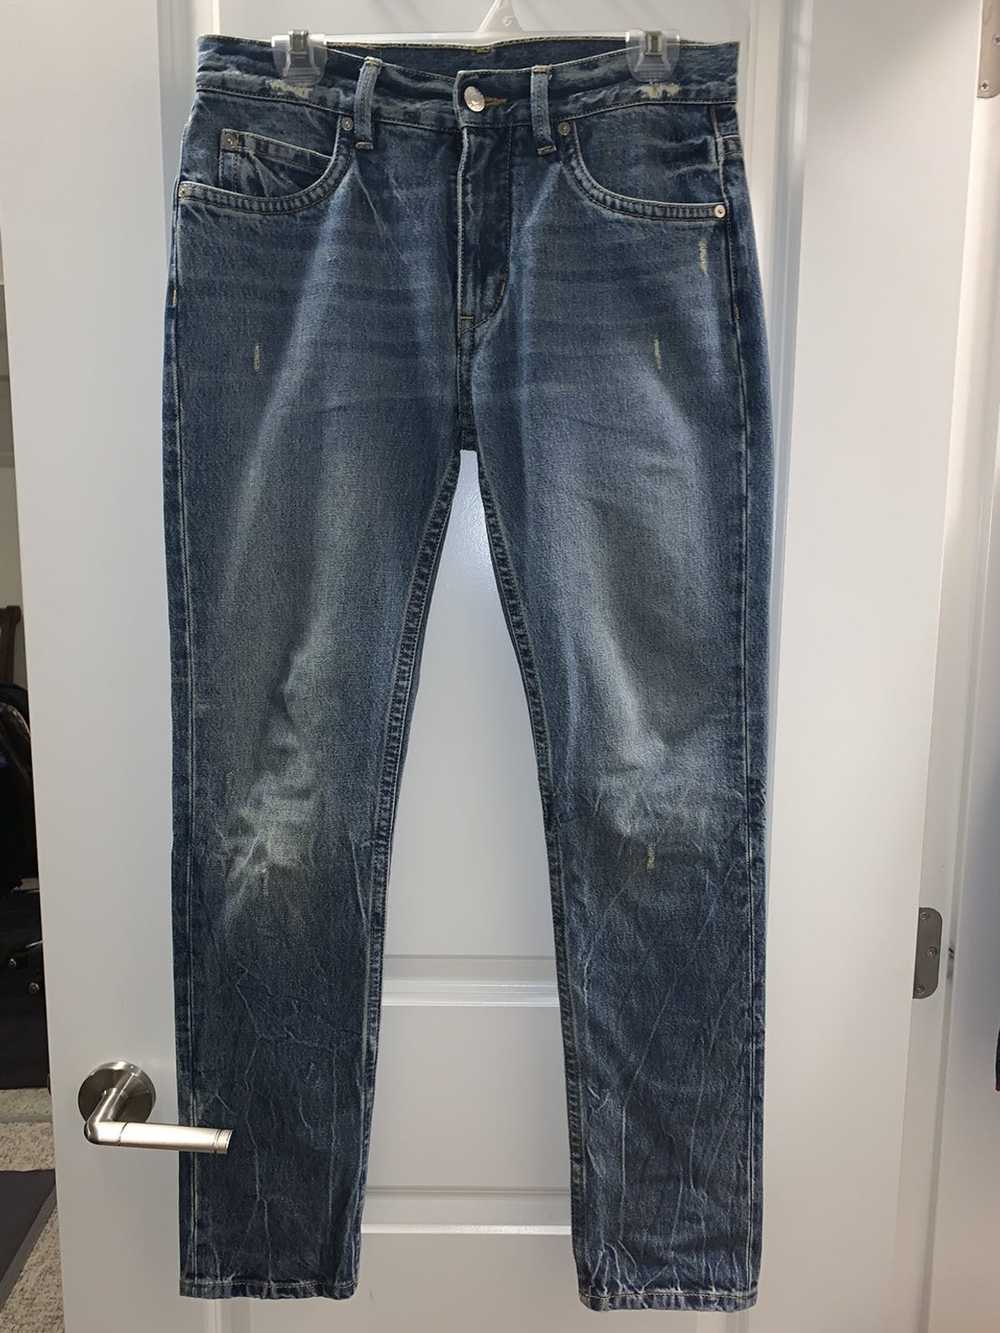 Helmut Lang Helmut Lang 87 Tinted Washed Jeans - image 4